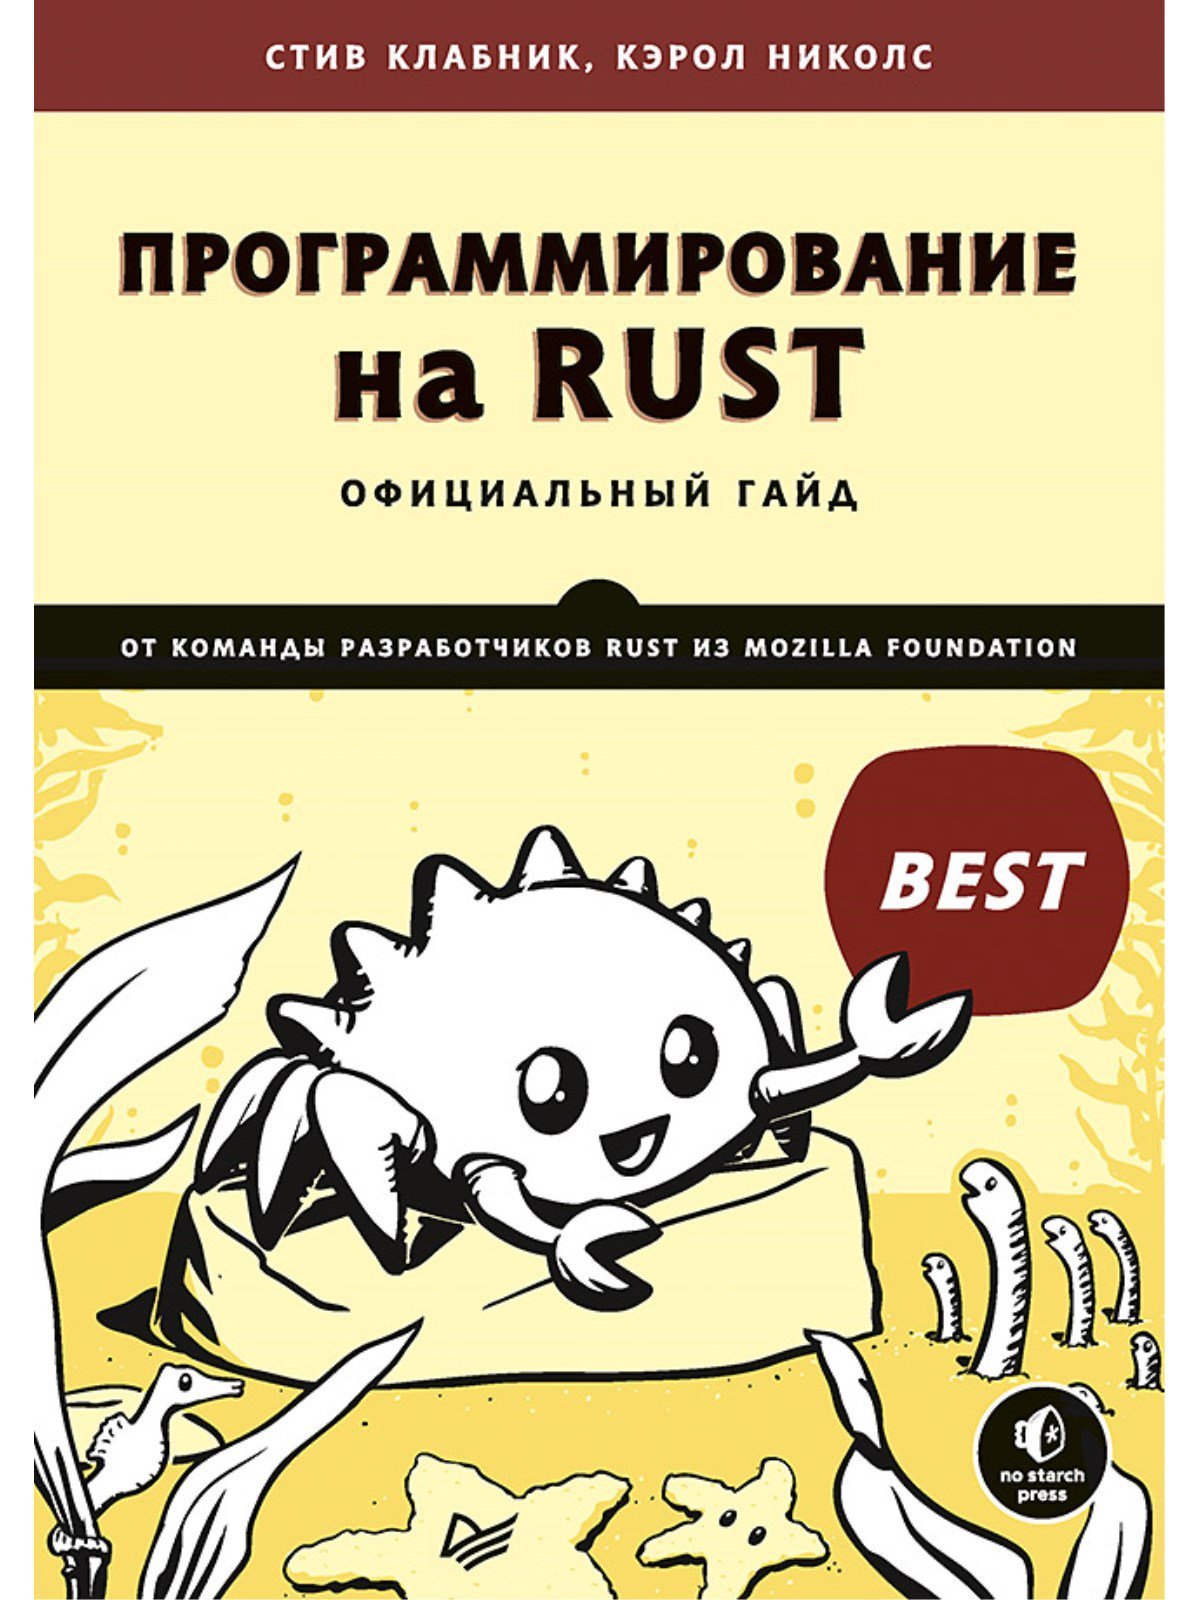 Программирование на Rust Официальный гайд от команды разработчиков Rust из Mozilla Foundation. Клабник Стив, Николс К.